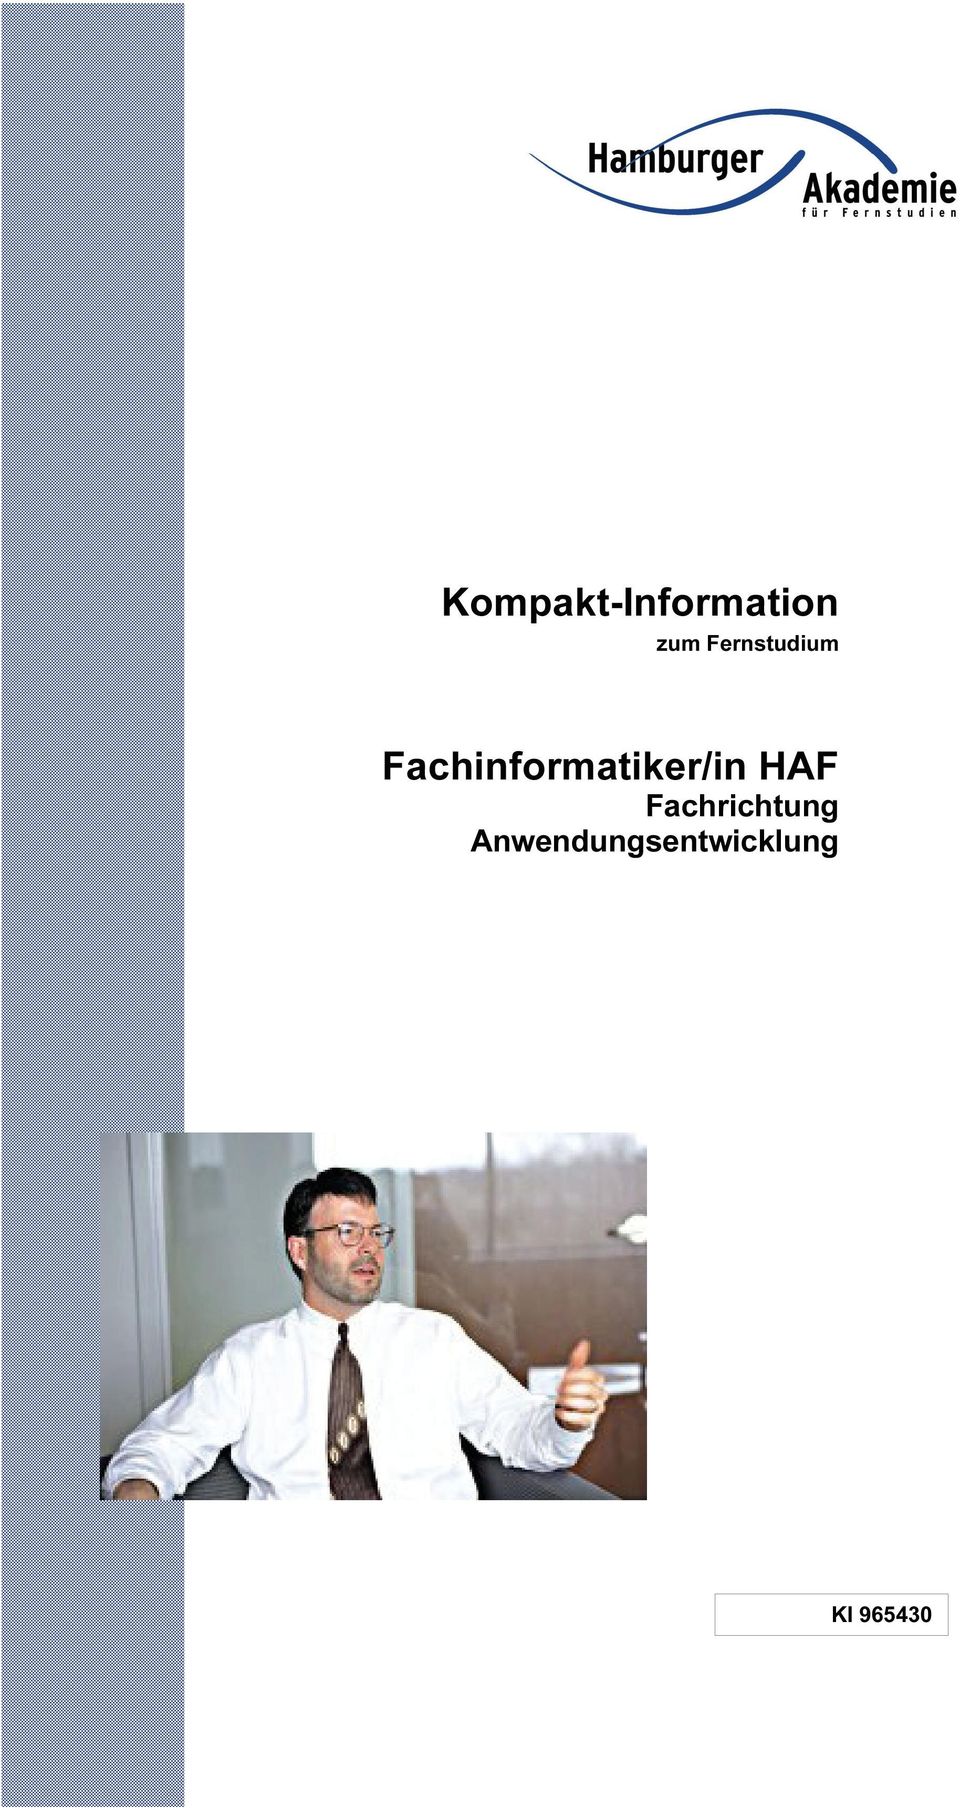 Fachinformatiker/in HAF